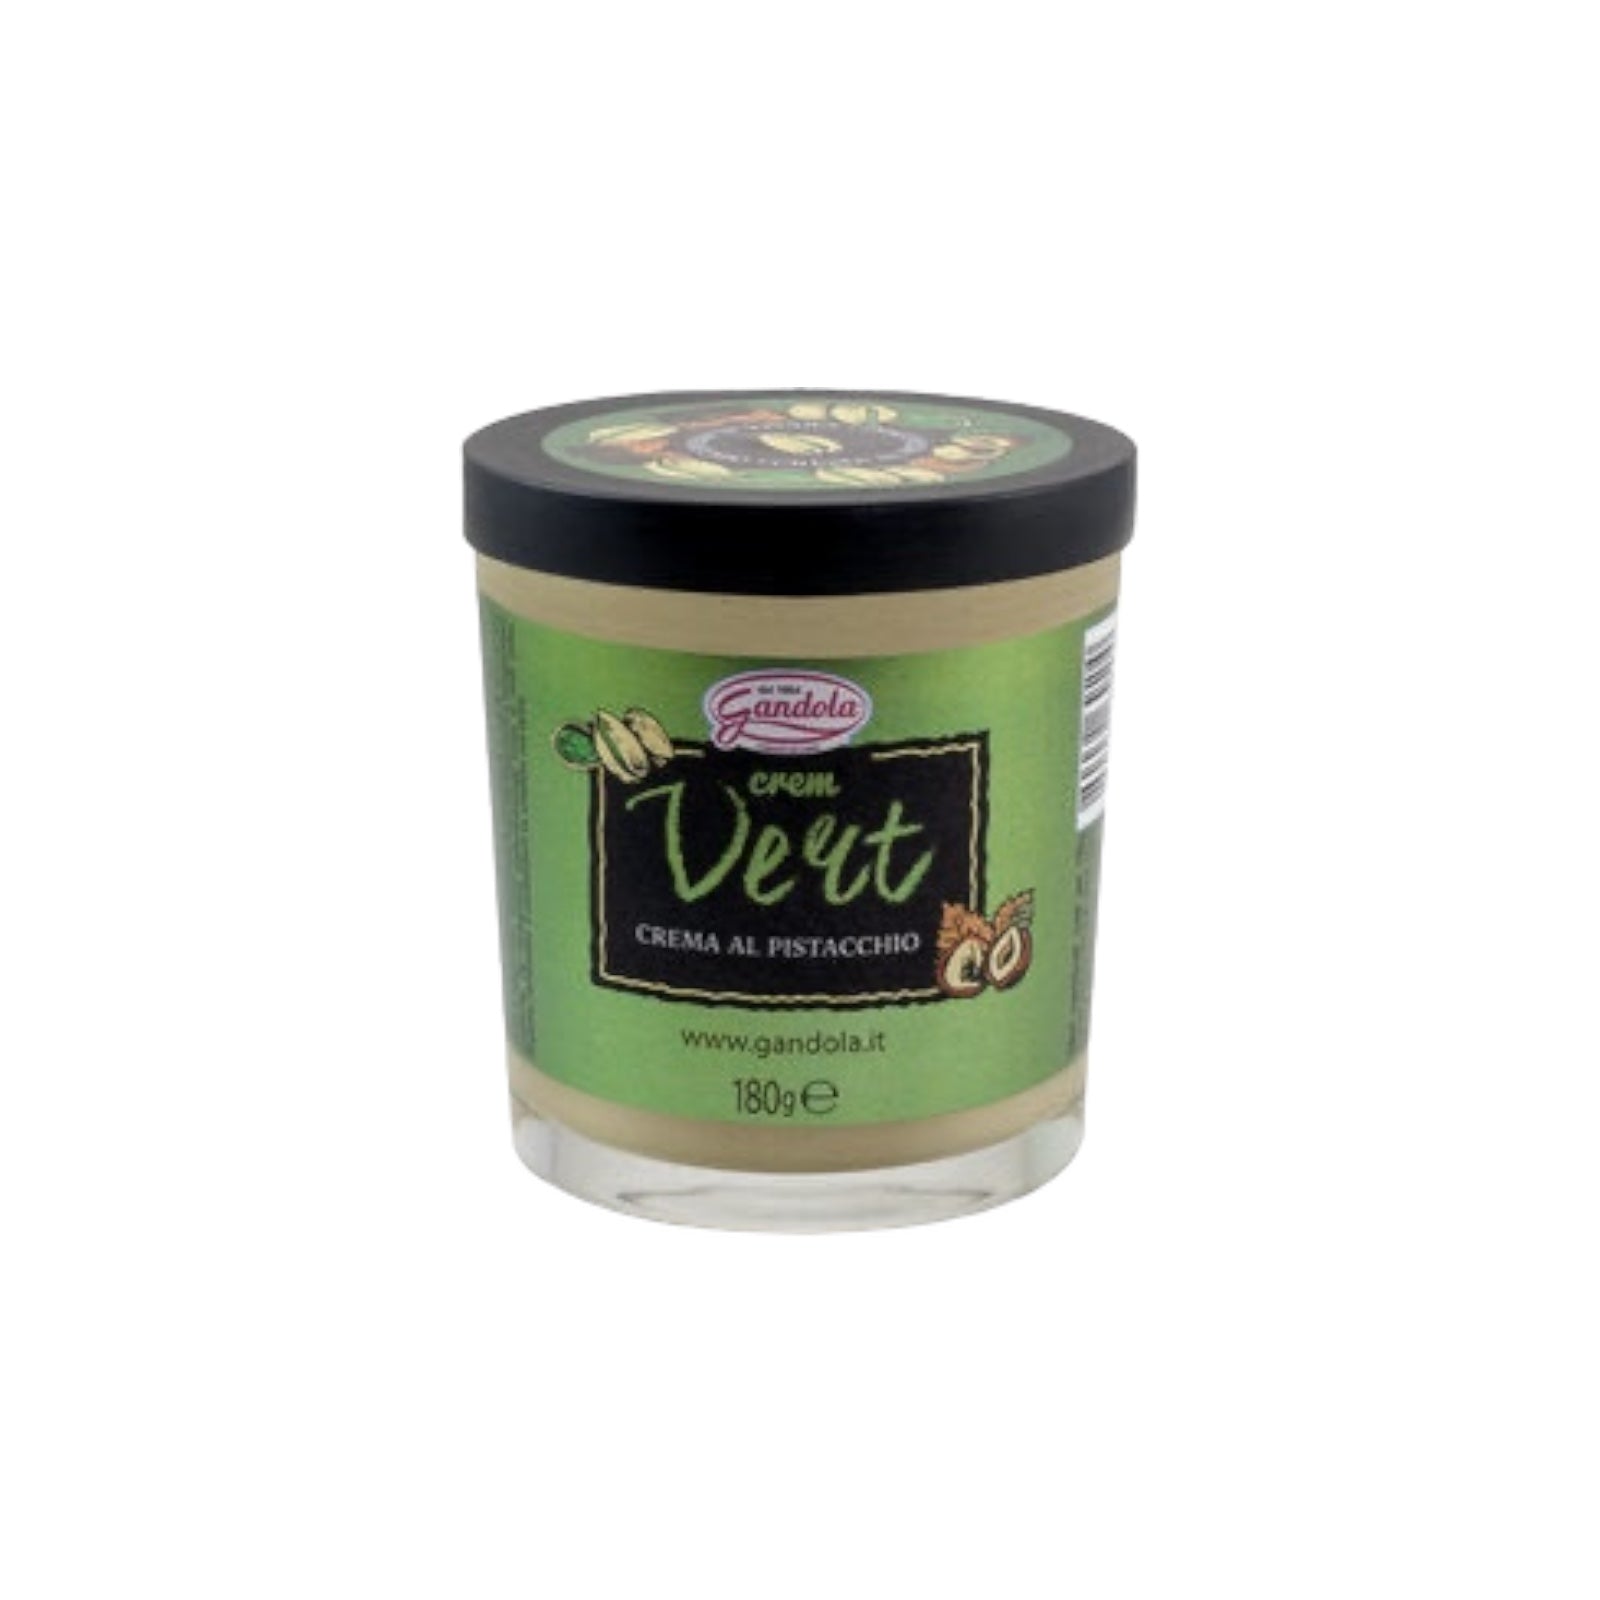 Pistachio Cream Vert By Gandola 180g